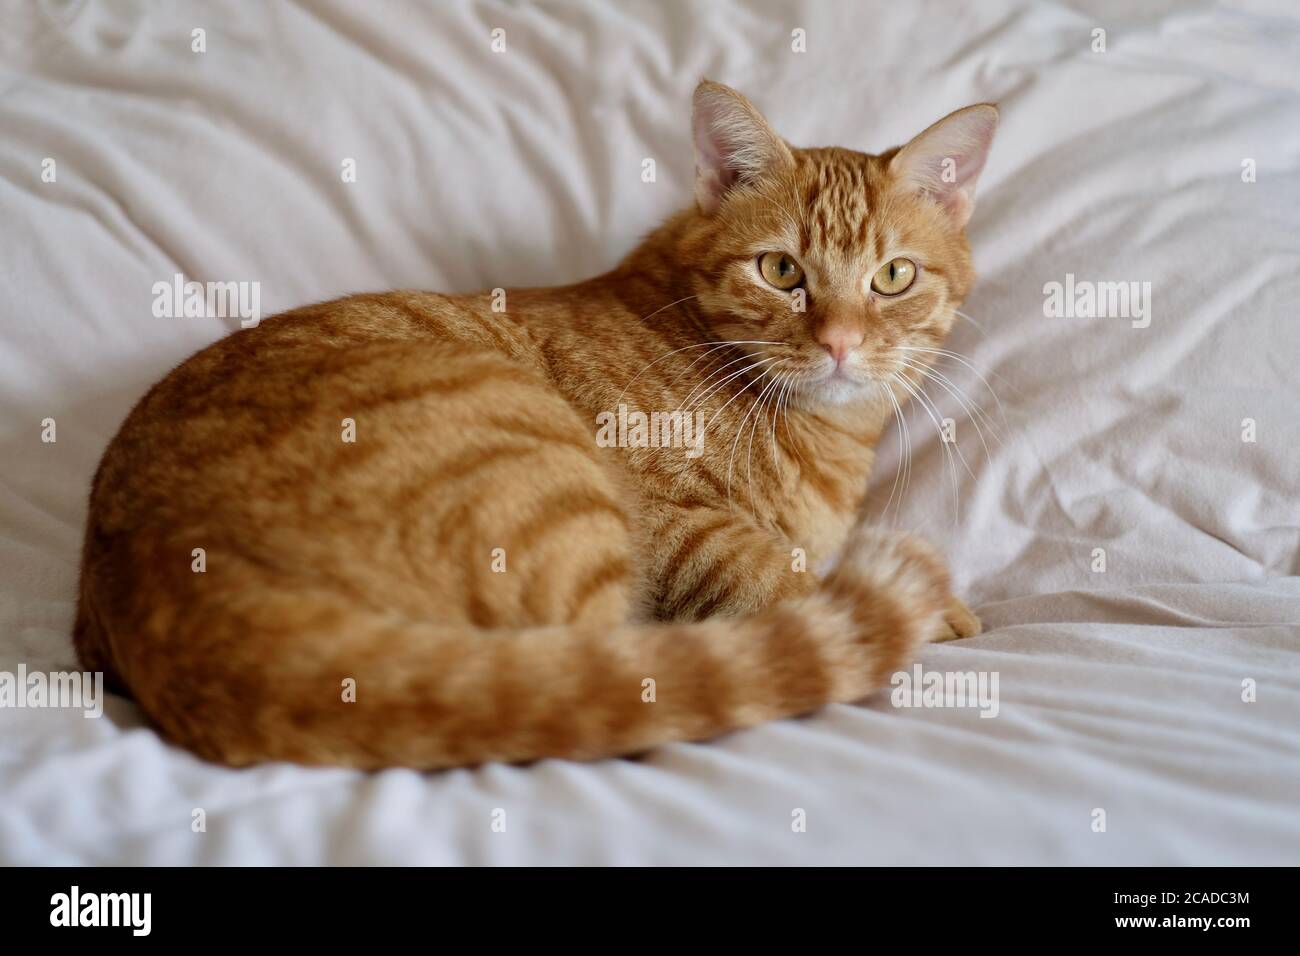 gros plan sur un chat tabby brun couché sur une courtepointe blanche. Regarder l'appareil photo. Arrière-plan flou Banque D'Images